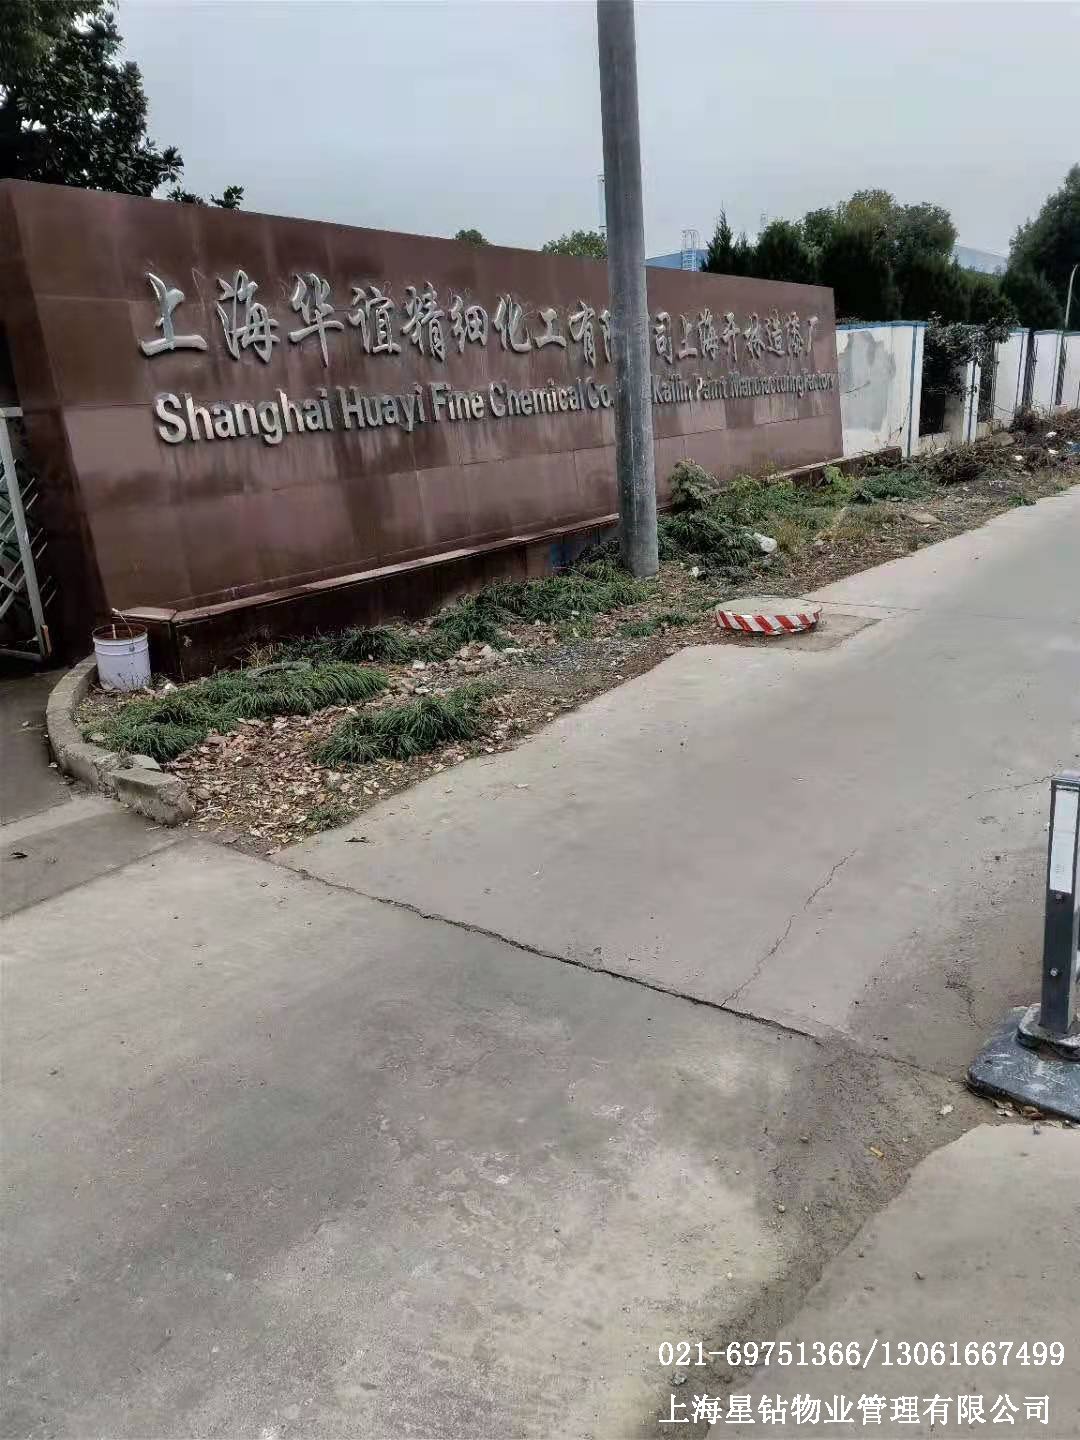  上海華誼精細化工-開林造漆廠保潔項目